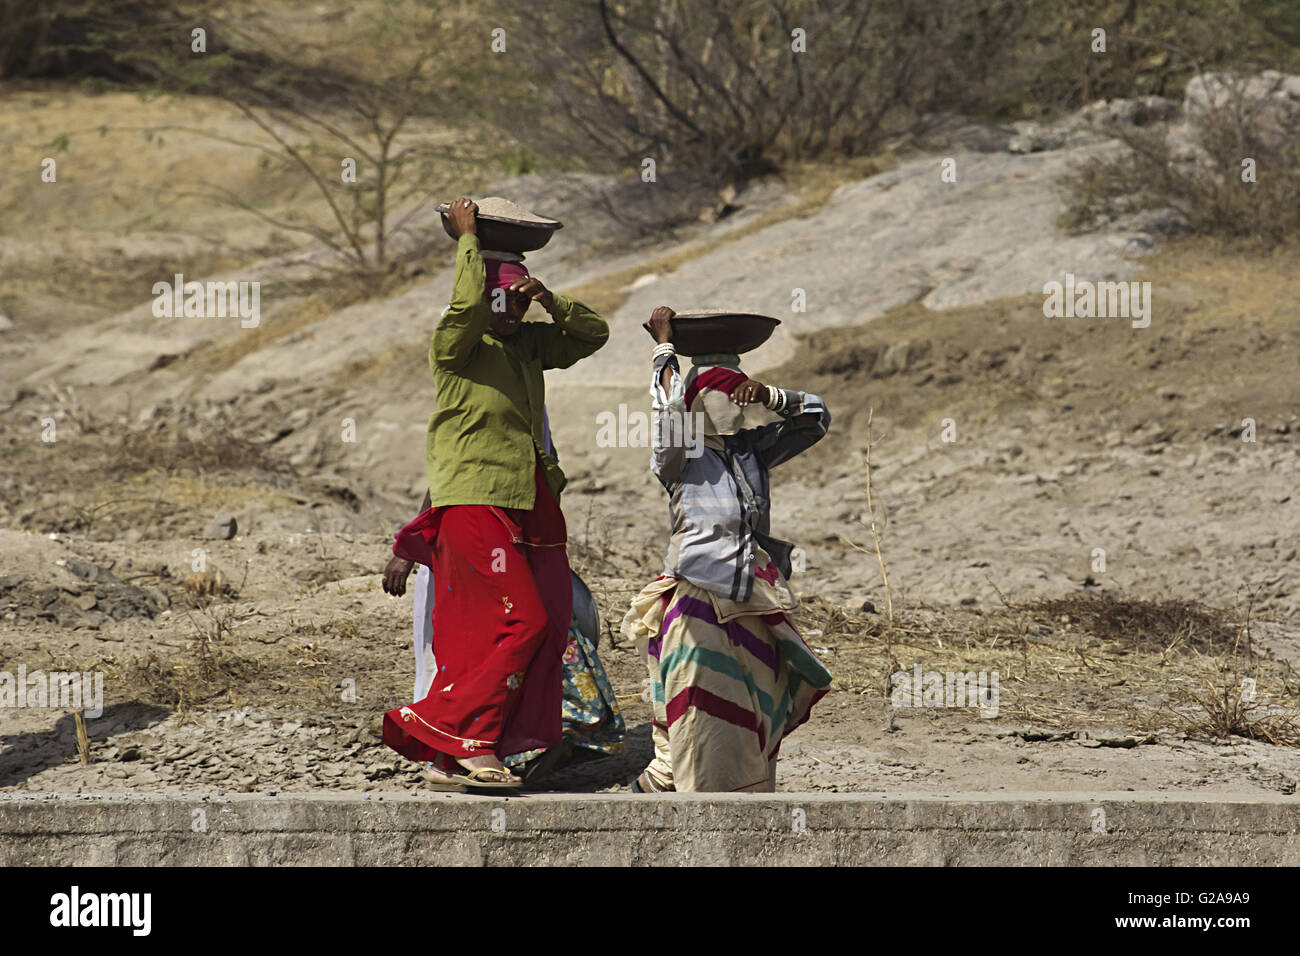 Traditionelle Frauen Arbeiter, Bera, Rajasthan, Indien Stockfoto